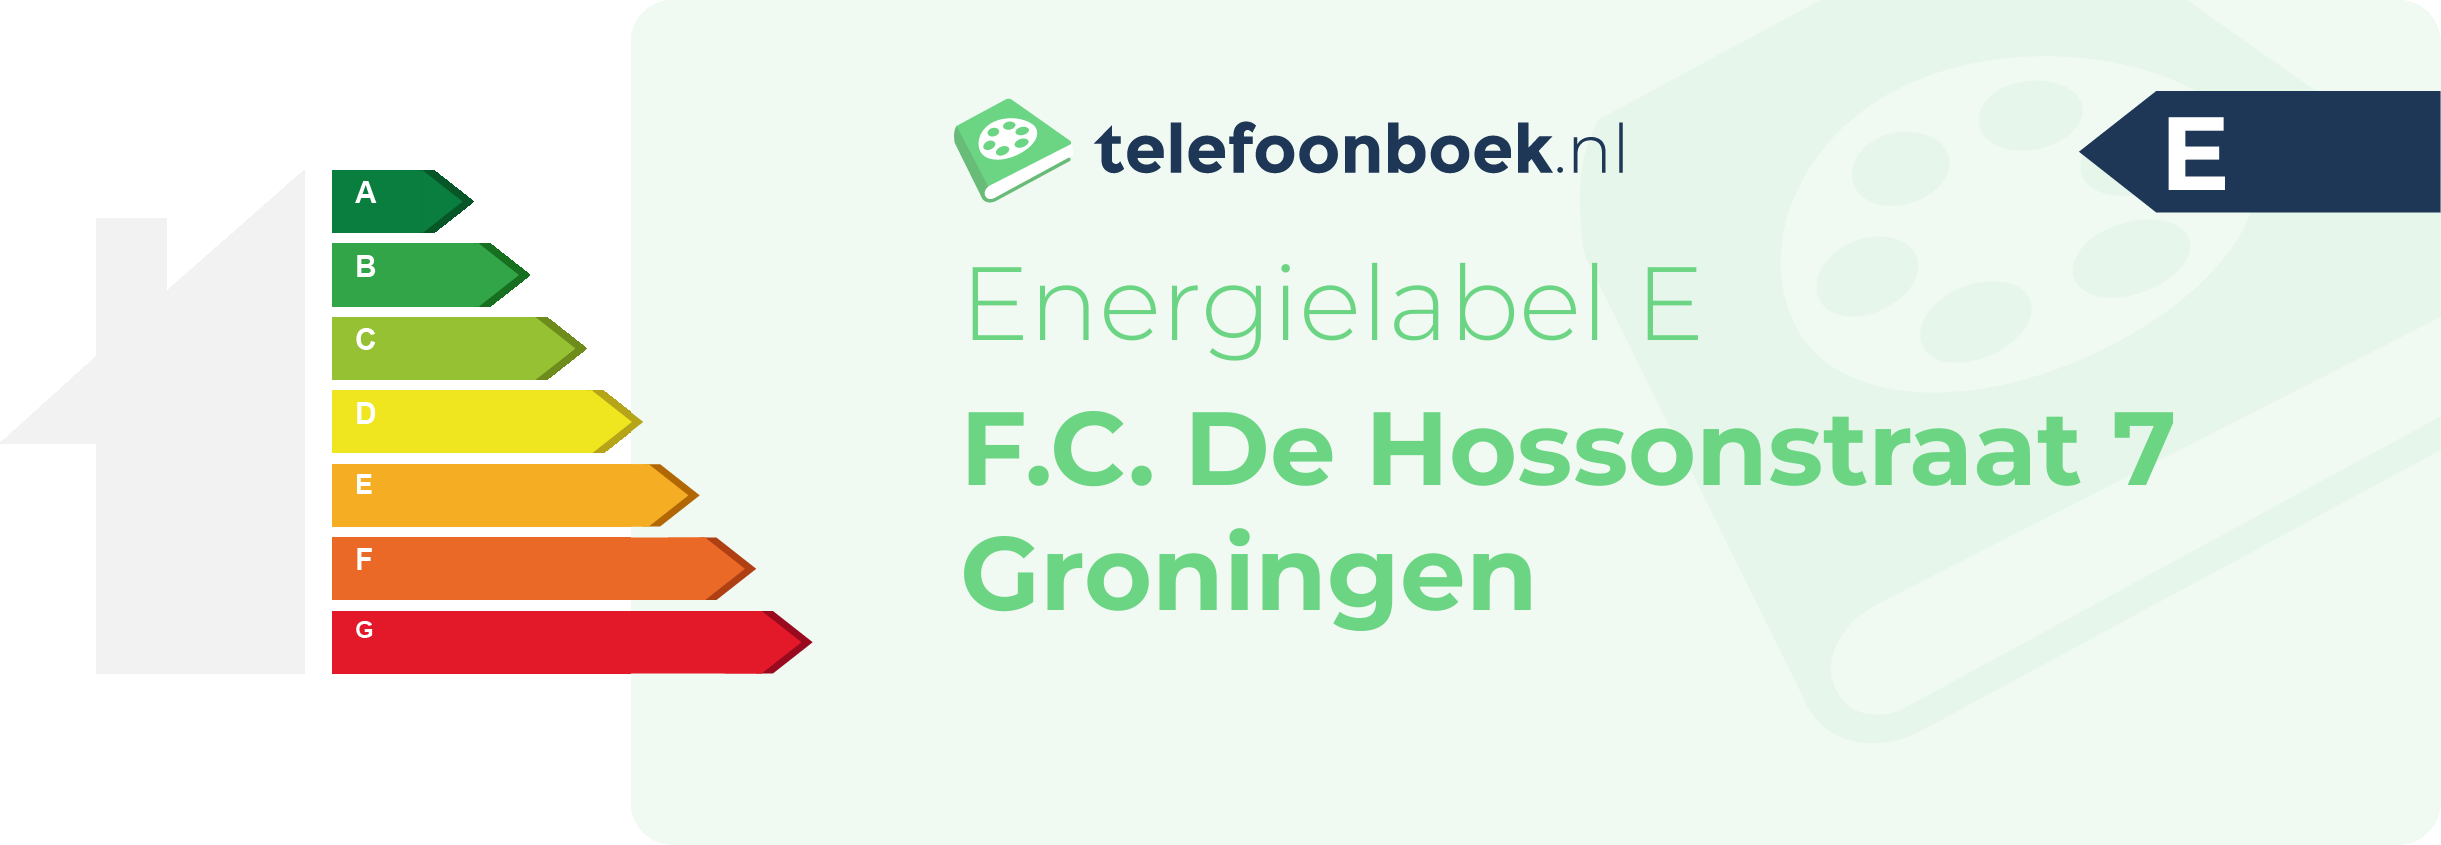 Energielabel F.C. De Hossonstraat 7 Groningen